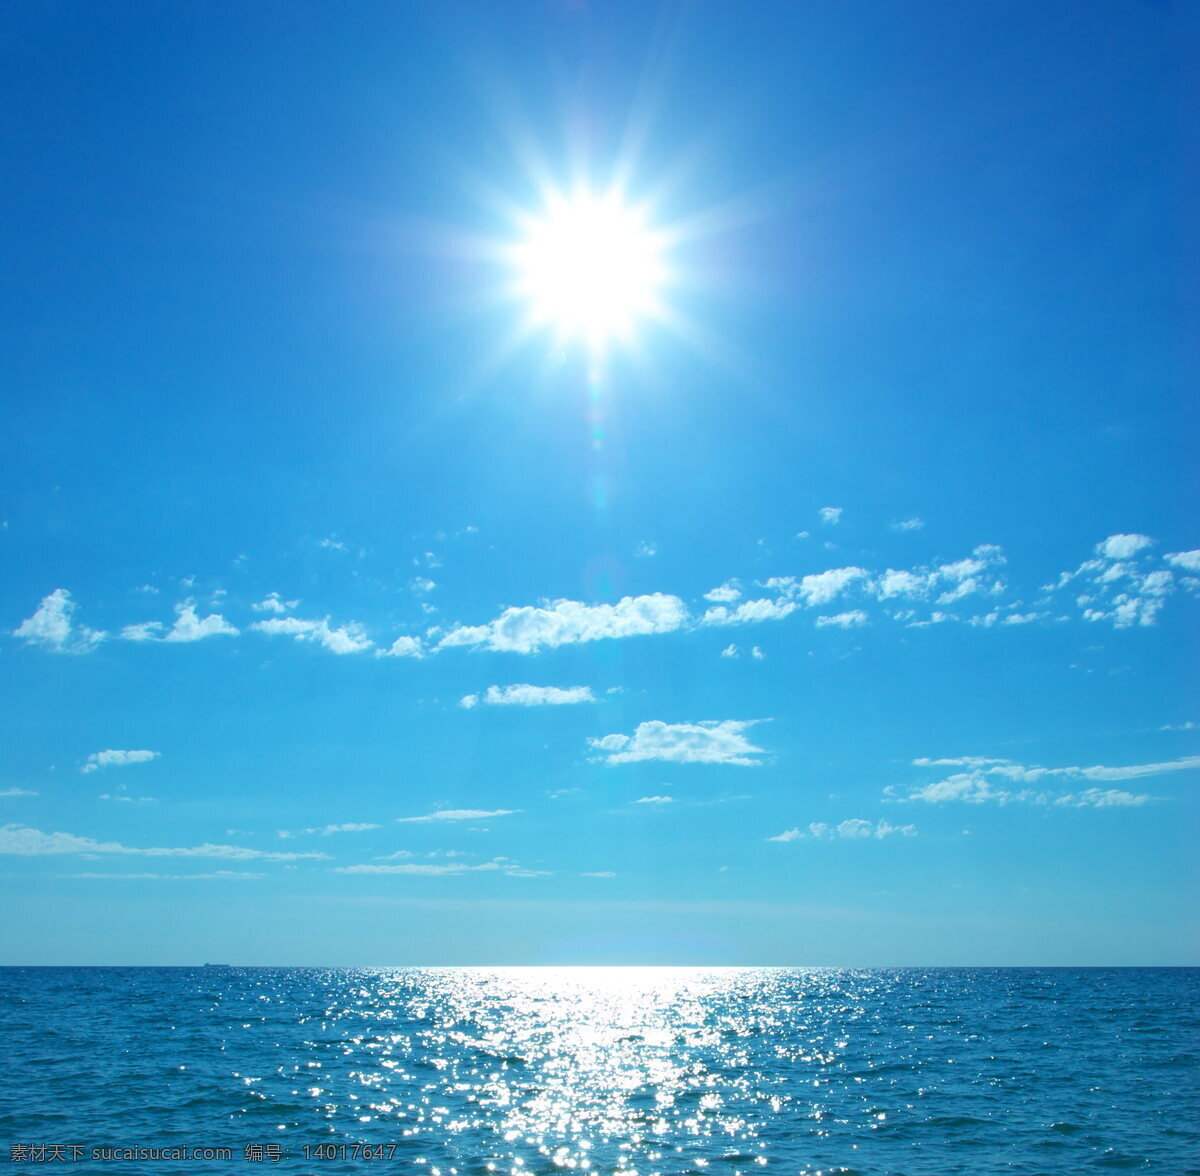 唯美 蓝天 大海 风景 高清 天空 海水 蓝色天空 阳光